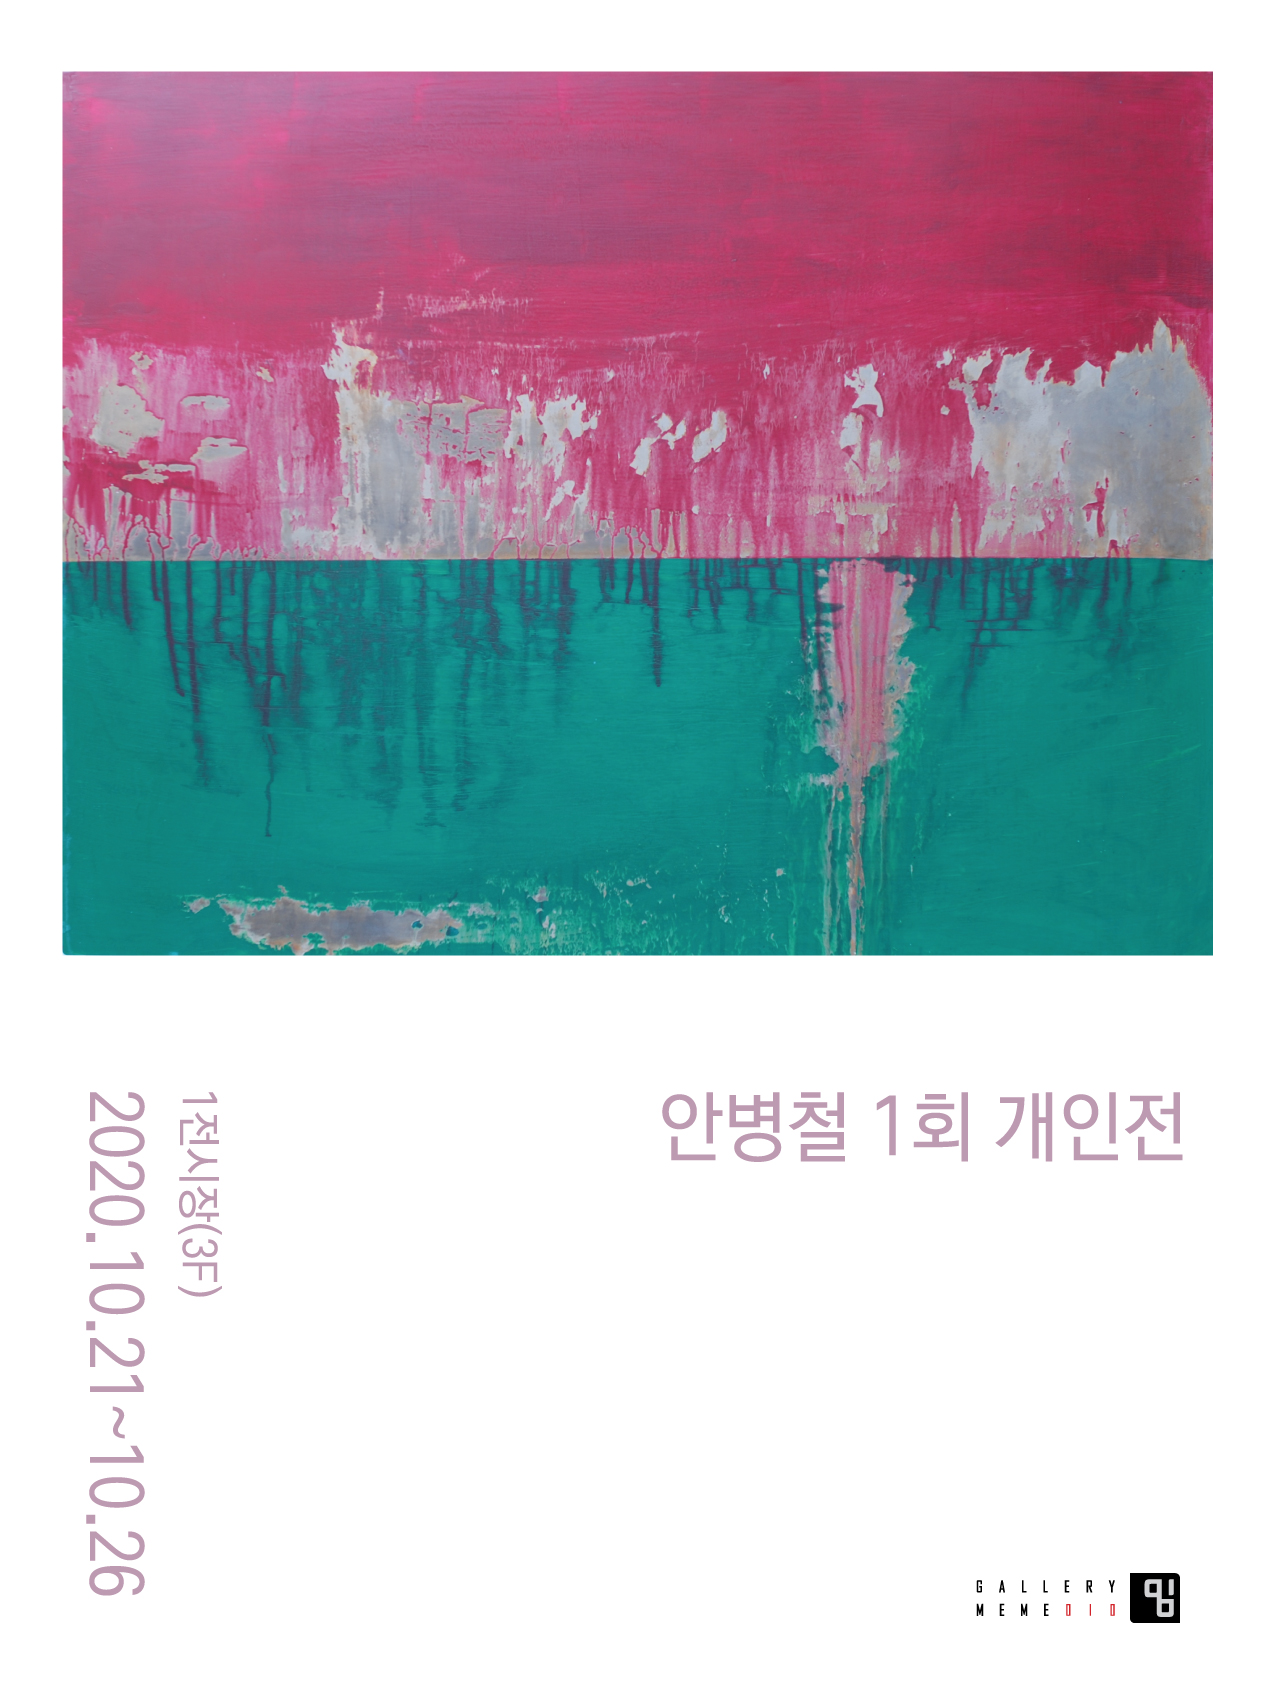 안병철 1회 개인전(Ahn Byungchul 1st Solo Exhibition)_녹슨 상처와 열정